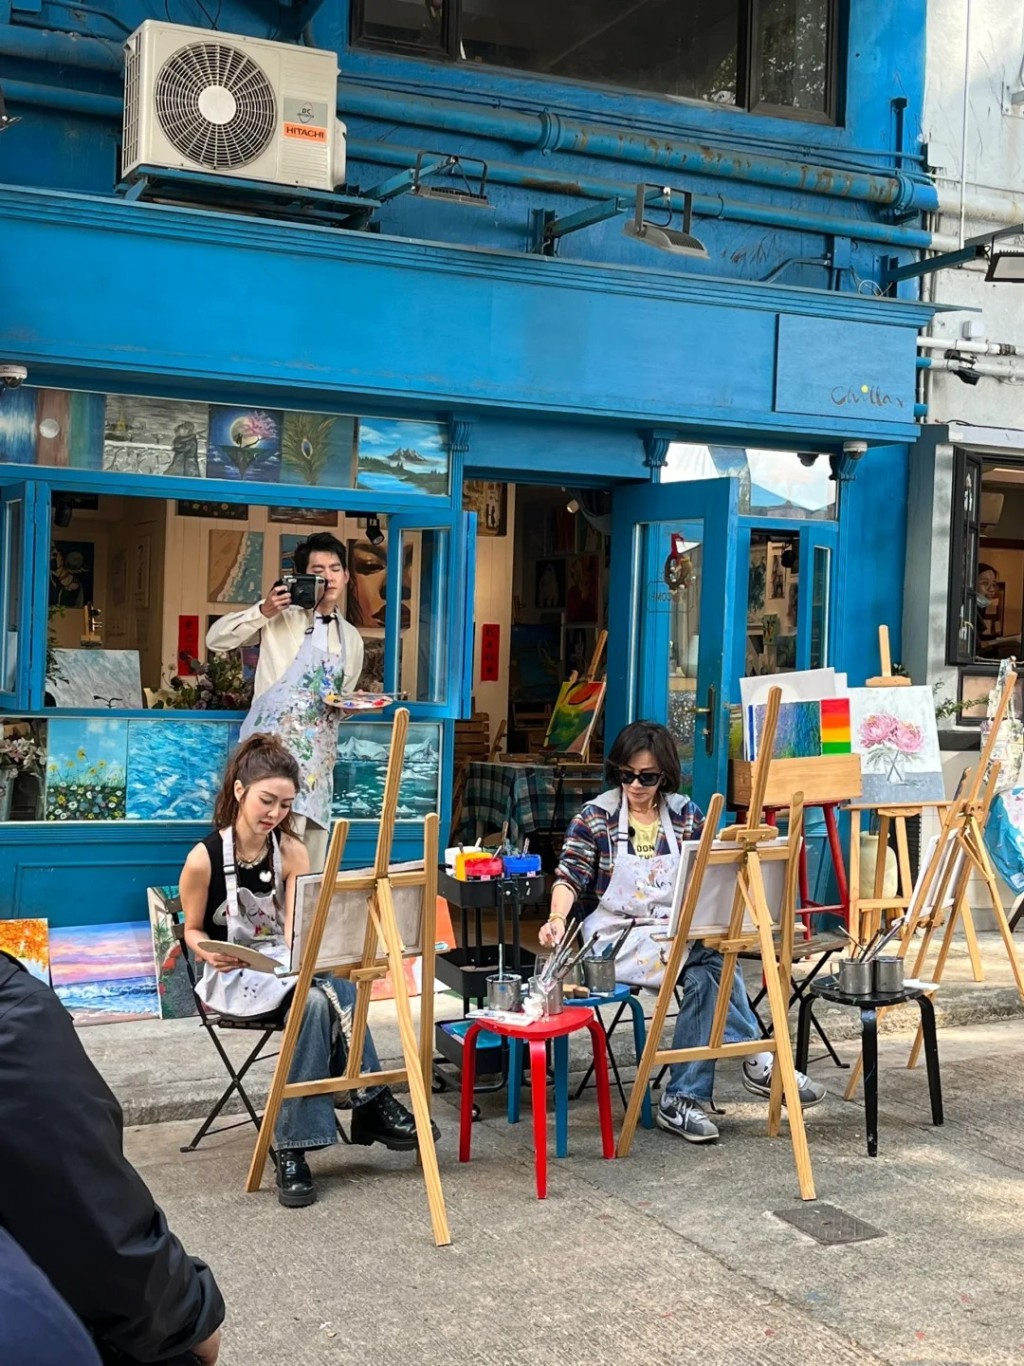 《嘉人自友约》共有六位女嘉宾，近日有网民见到刘嘉玲与薛凯琪在香港街头拍摄。